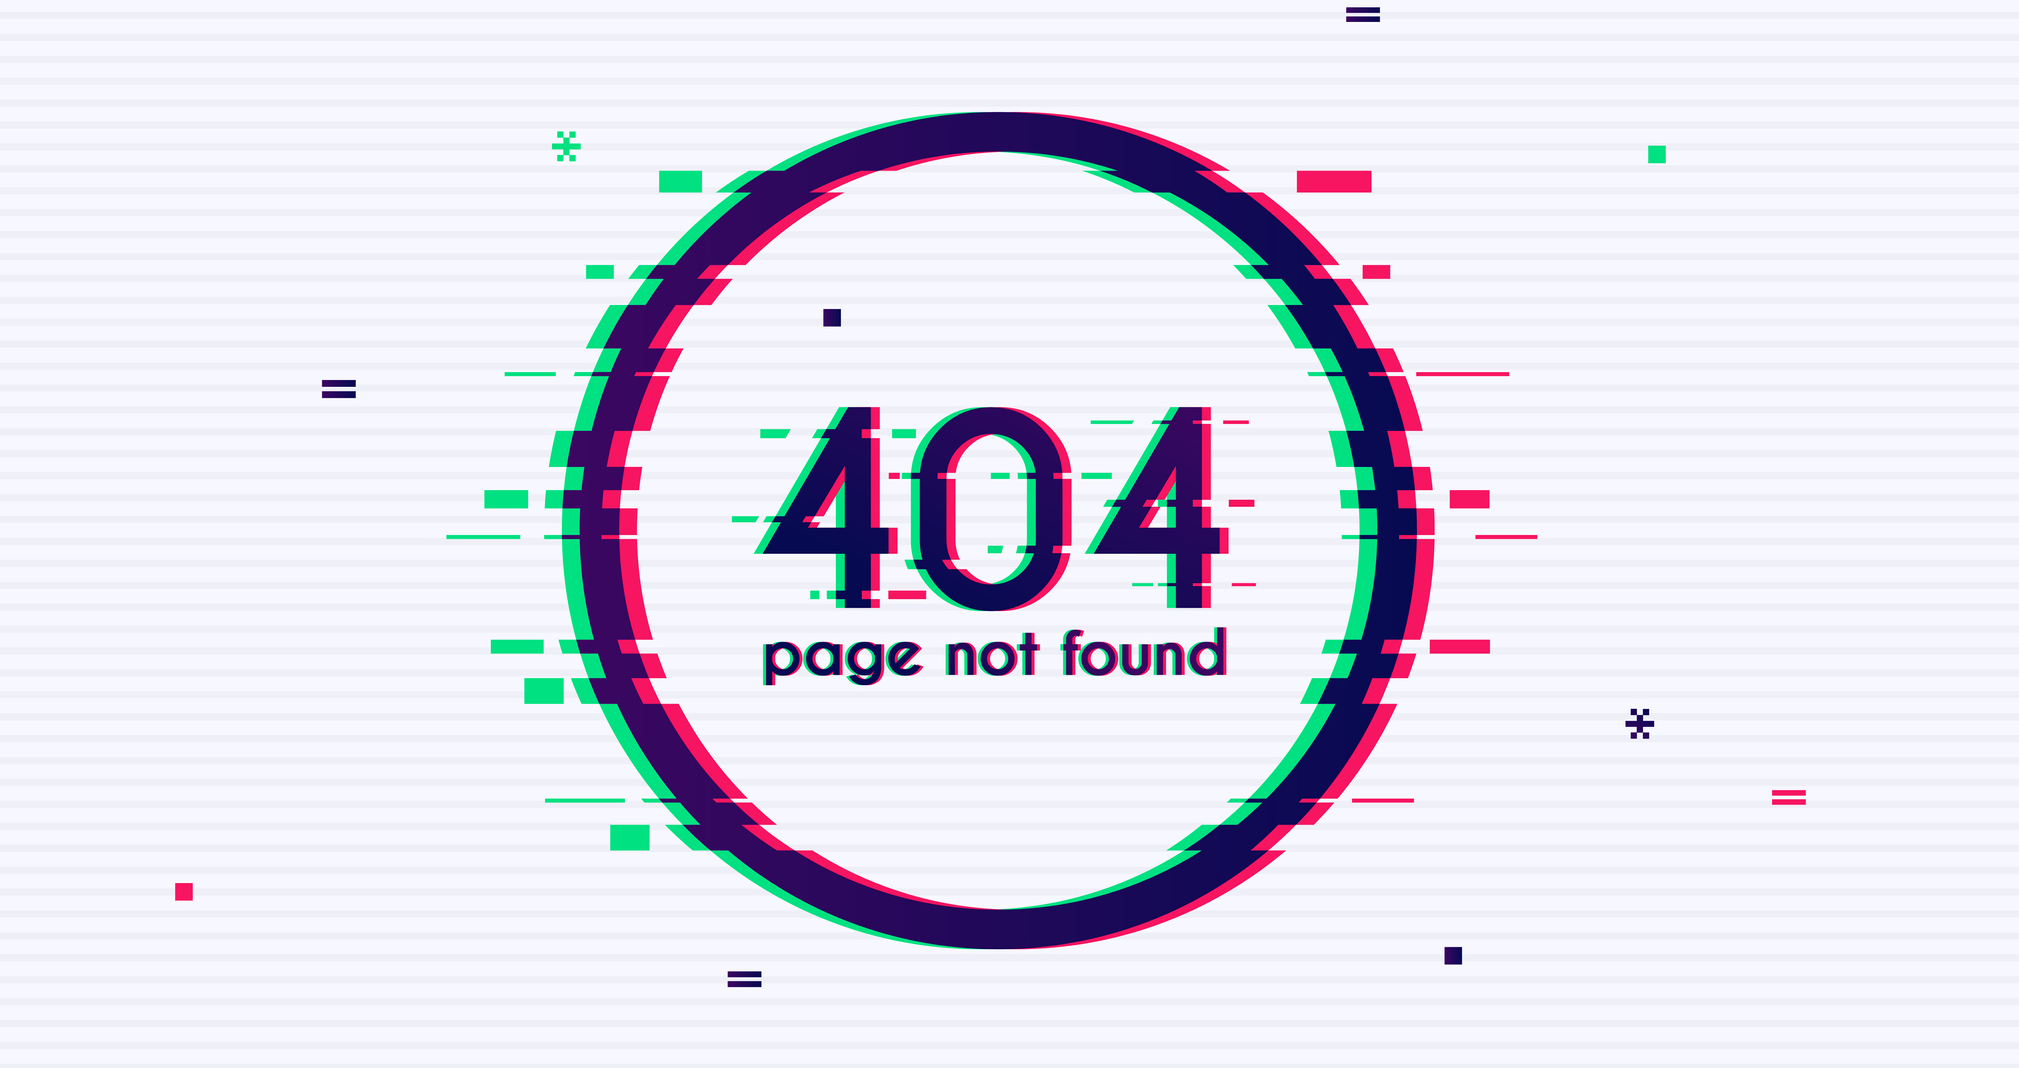 404 Not Found Error